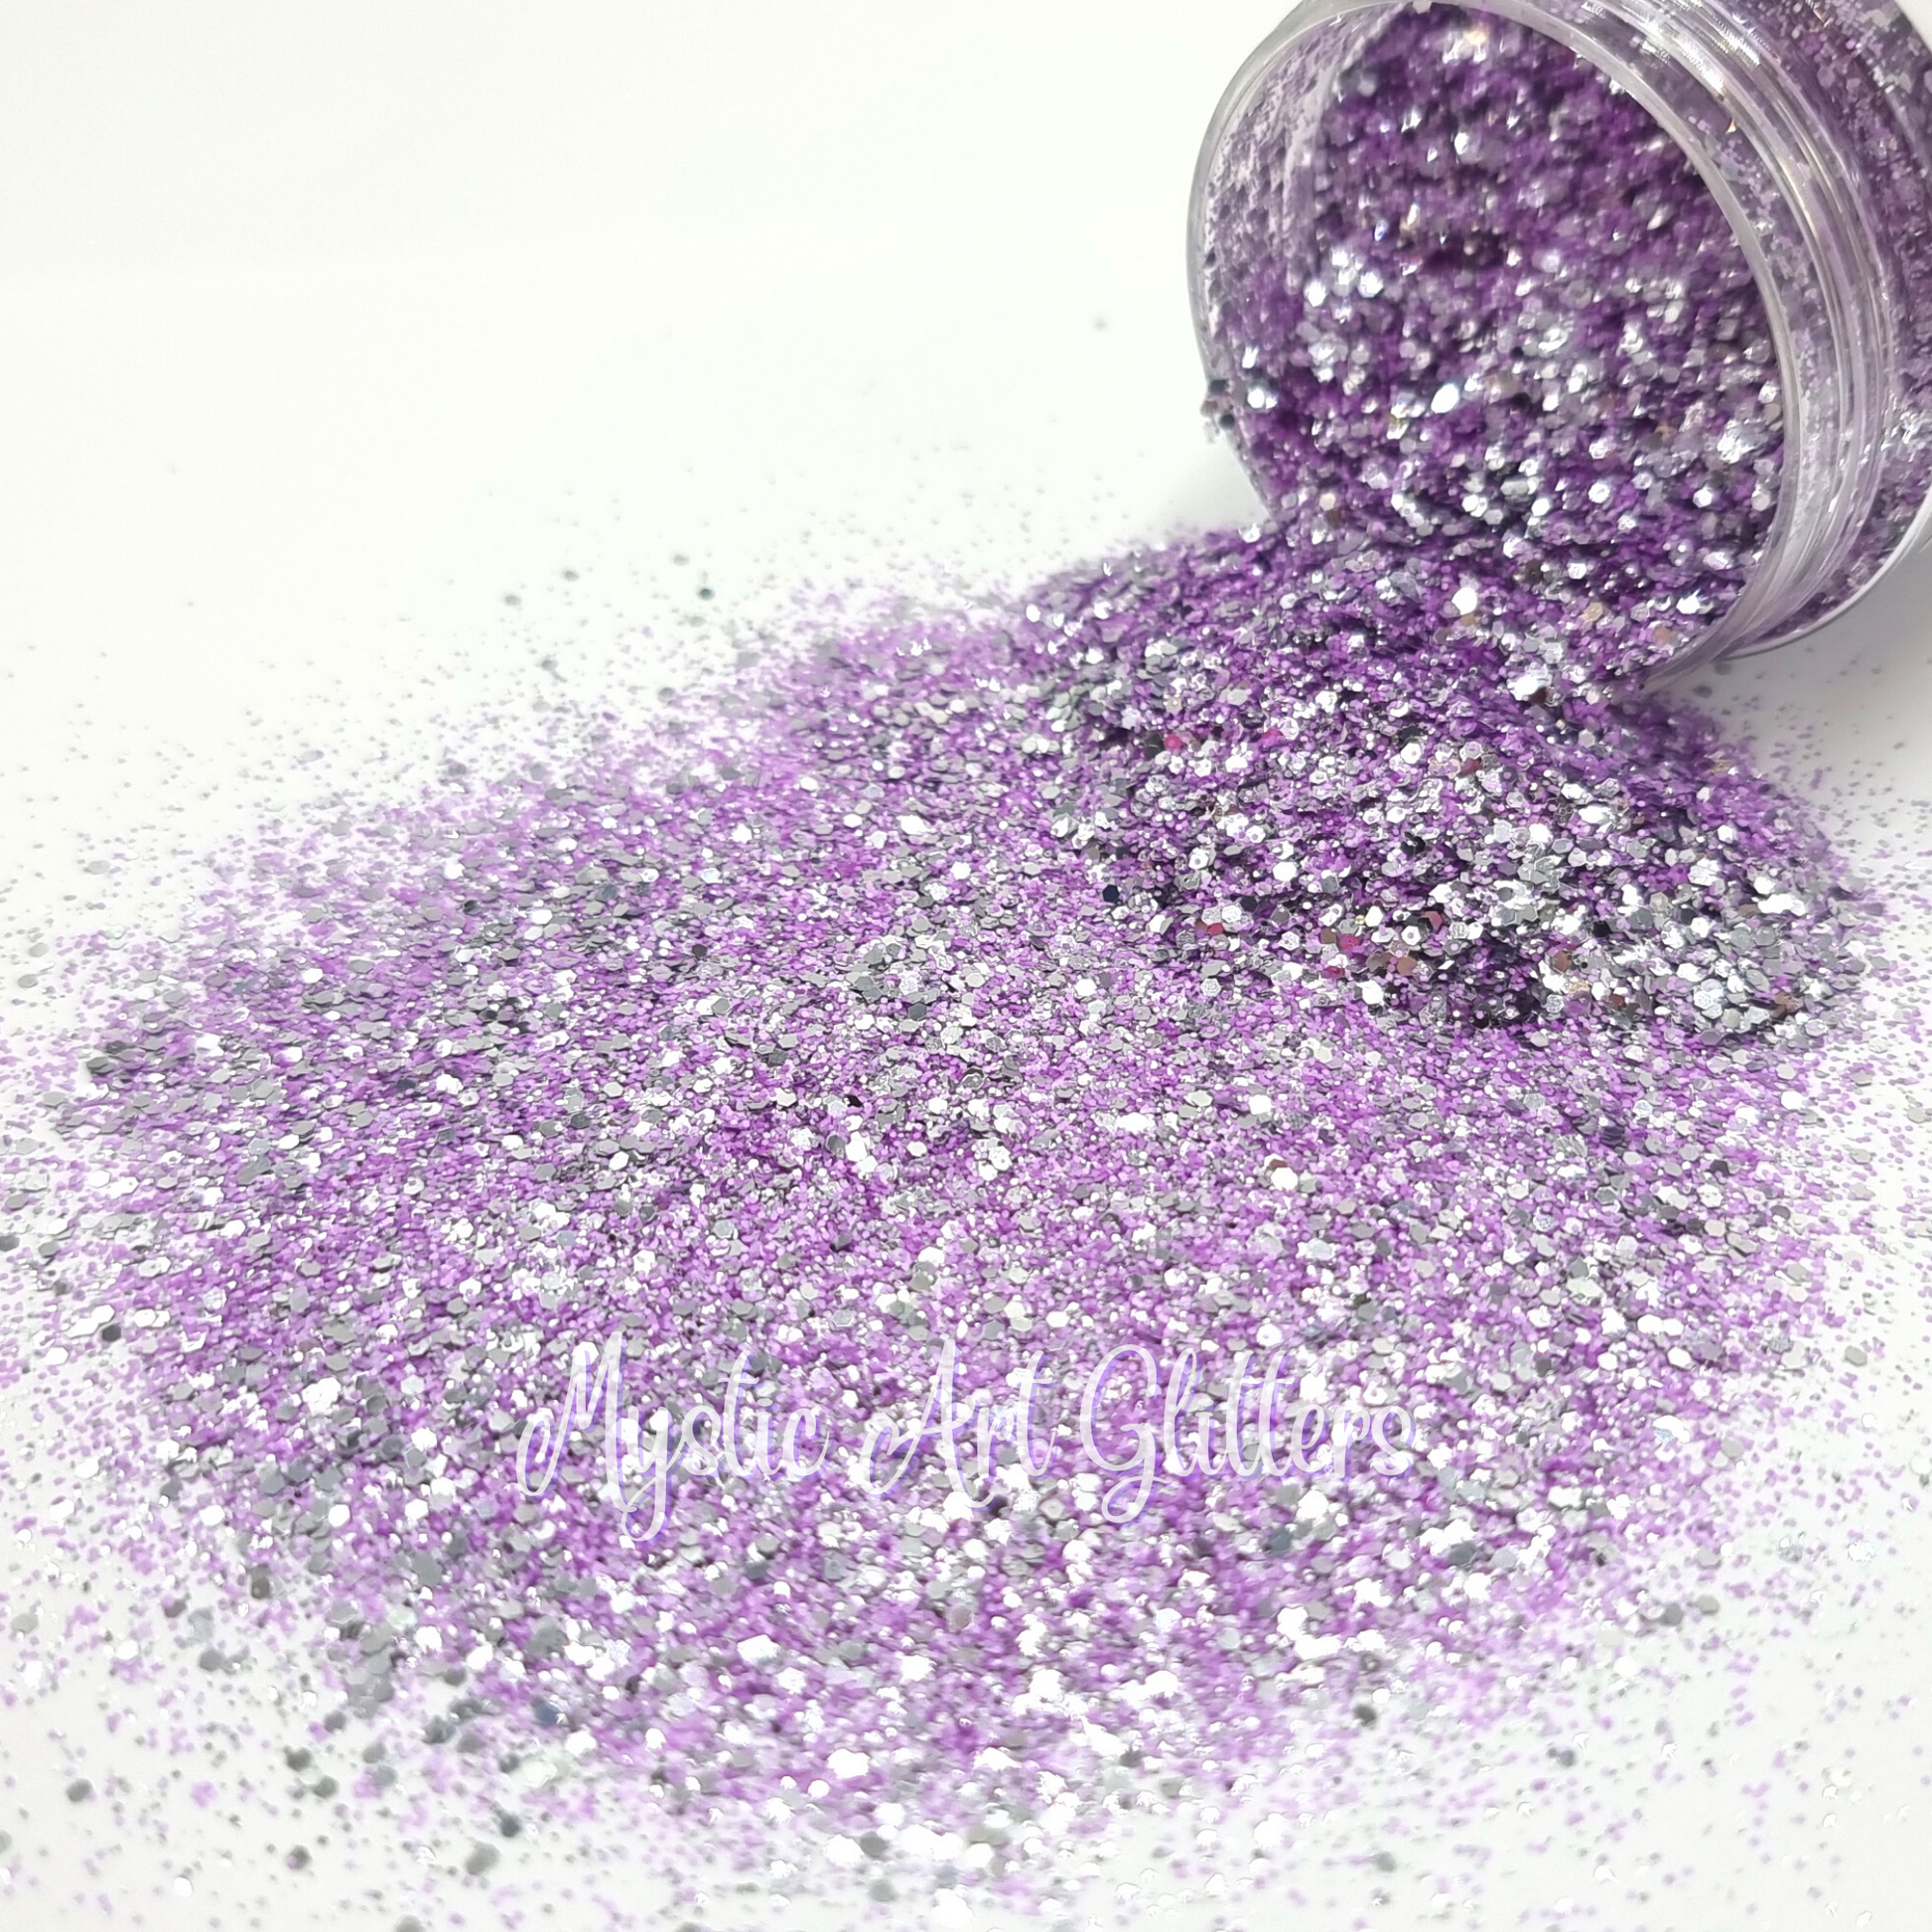 Ravishing purple and silver fine glitter mix